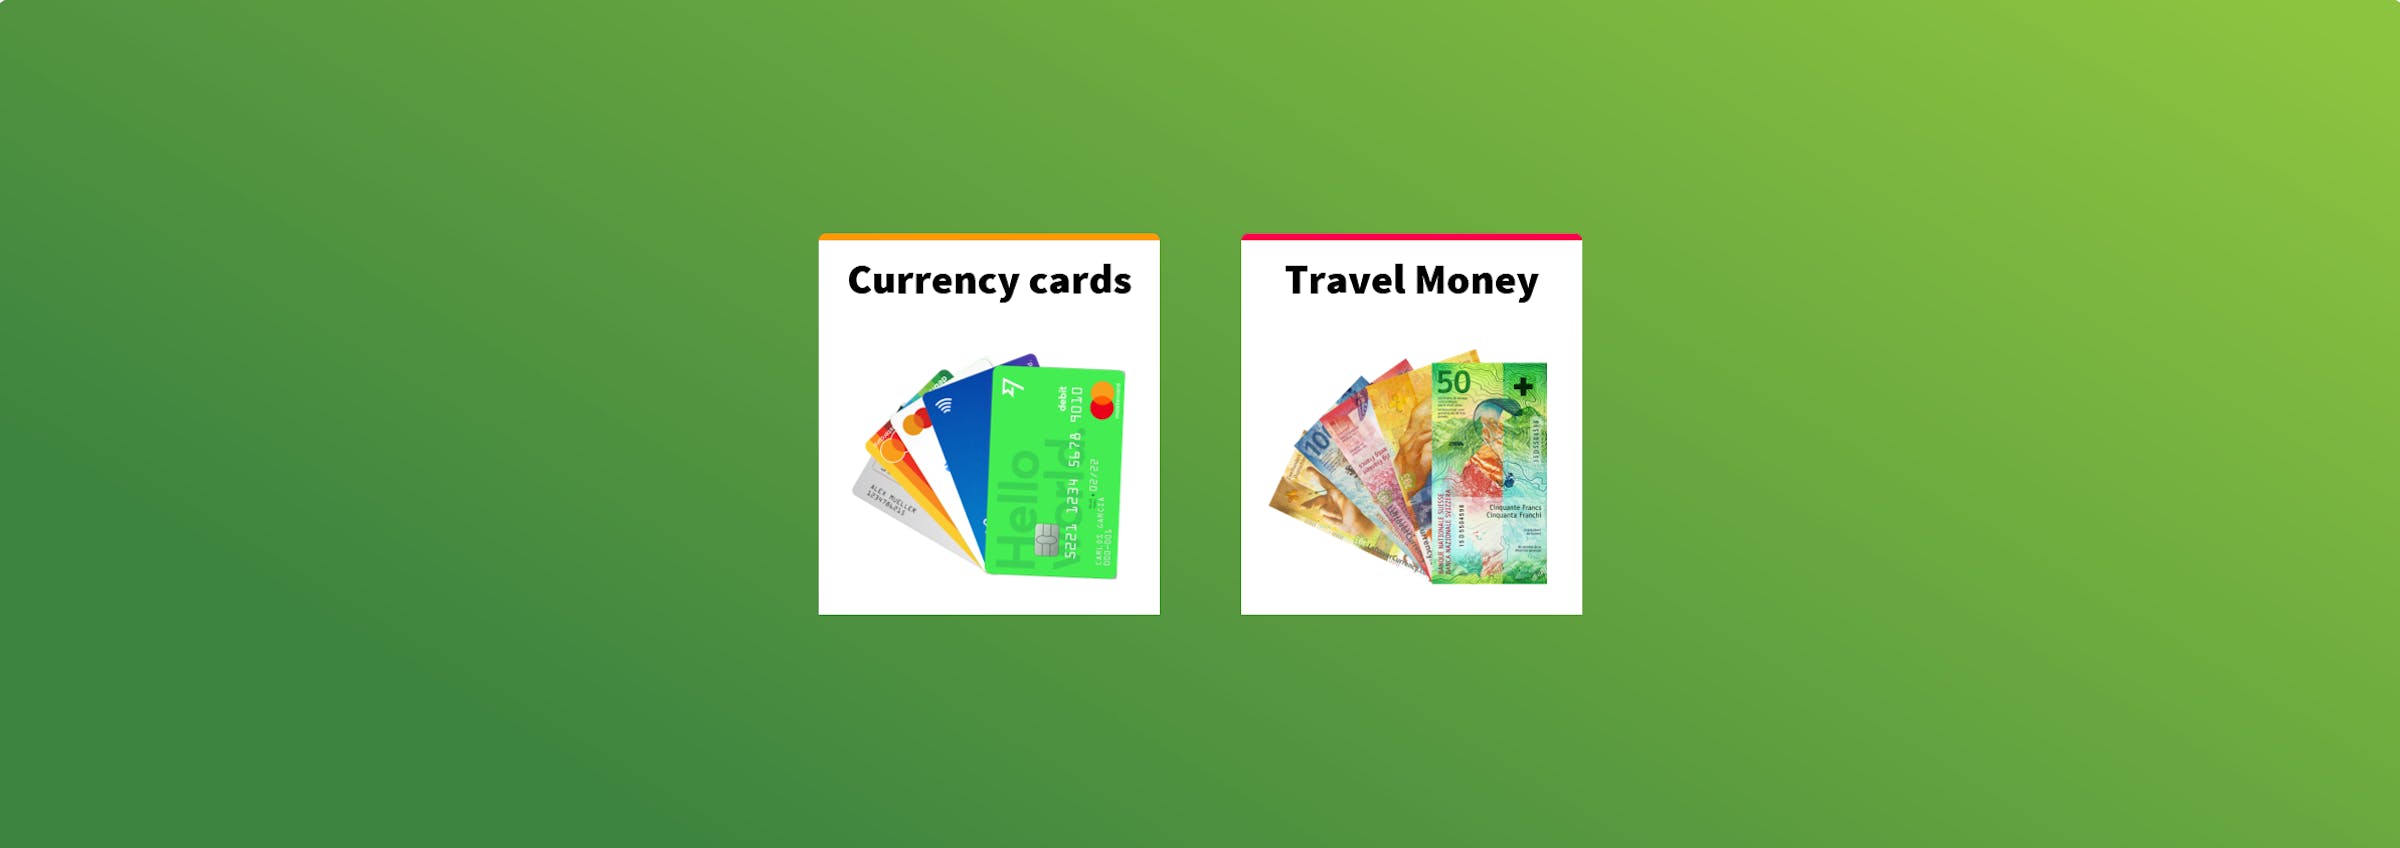 Travel Money Comparison